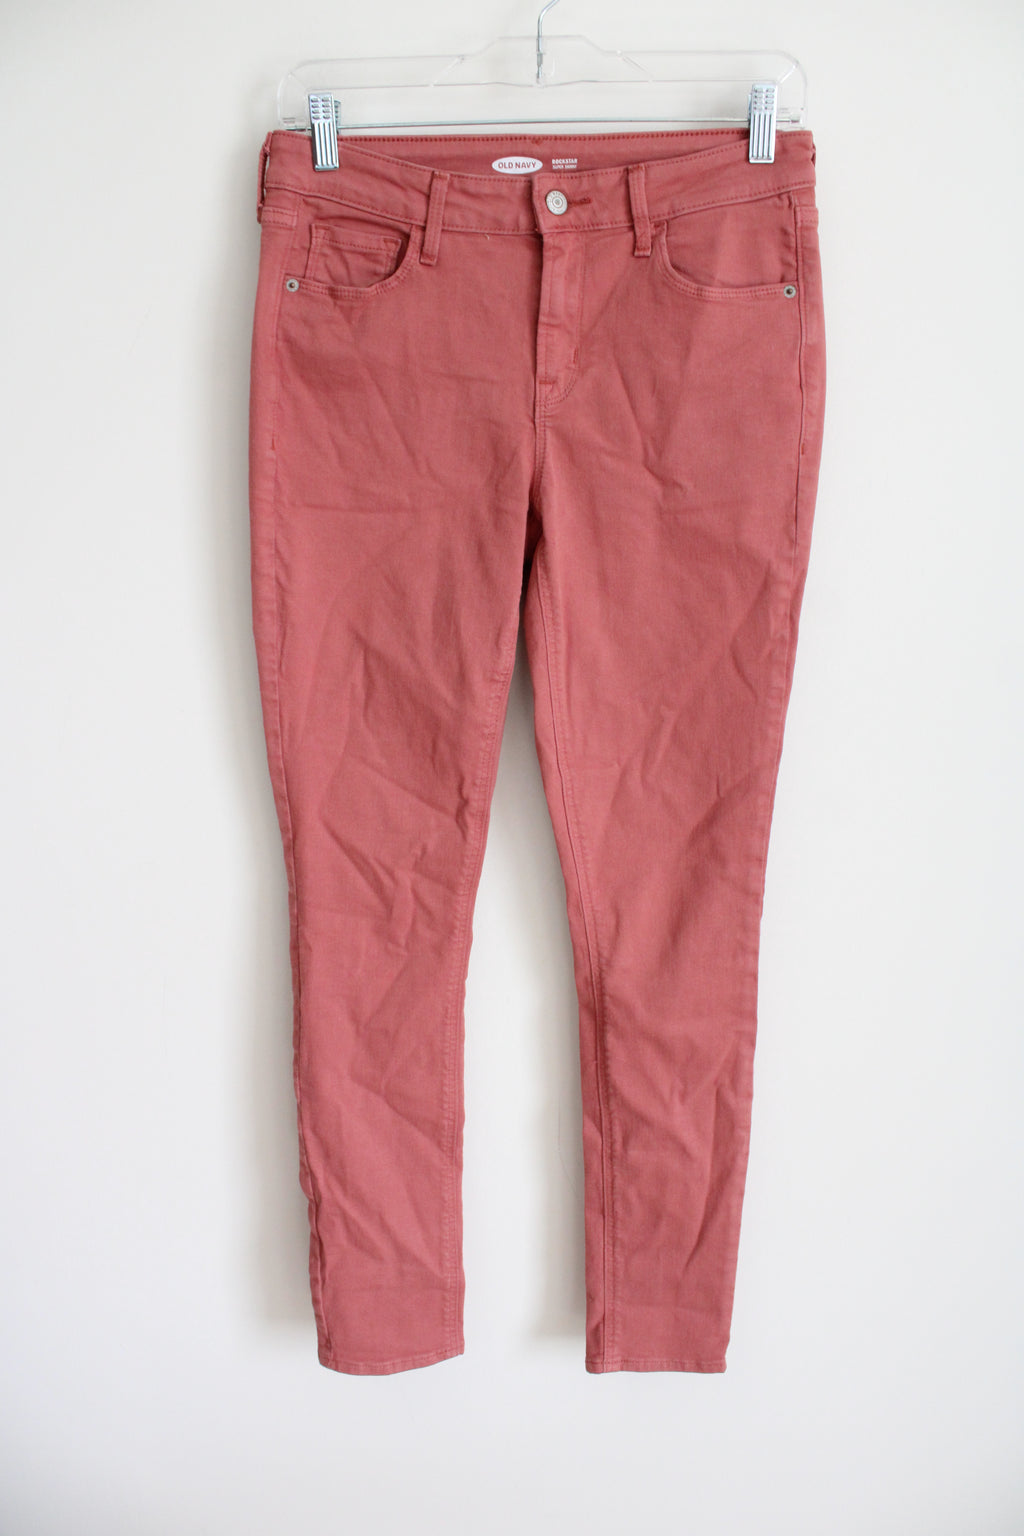 Old Navy Rockstar Super Skinny Pink Jeans | 6